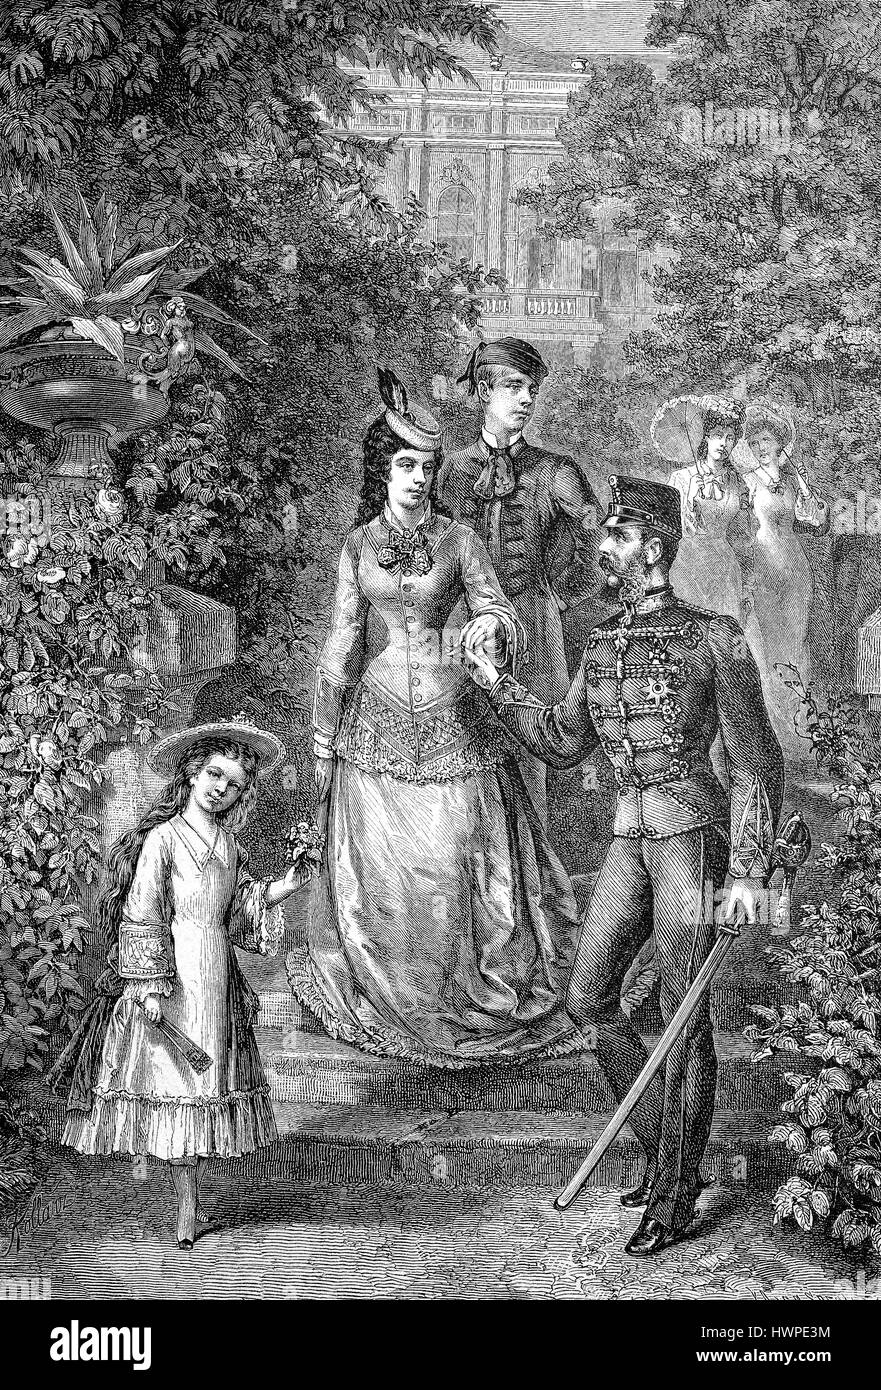 La famille impériale d'Autriche à l'été la fraîcheur, l'Archiduchesse Marie Valérie, l'Impératrice Elisabeth, le prince héritier Rodolphe, l'empereur François-Joseph, dans le parc du château de Gödöllö, Hongrie, la reproduction d'une gravure sur bois originale de l'année 1882, l'amélioration numérique Banque D'Images